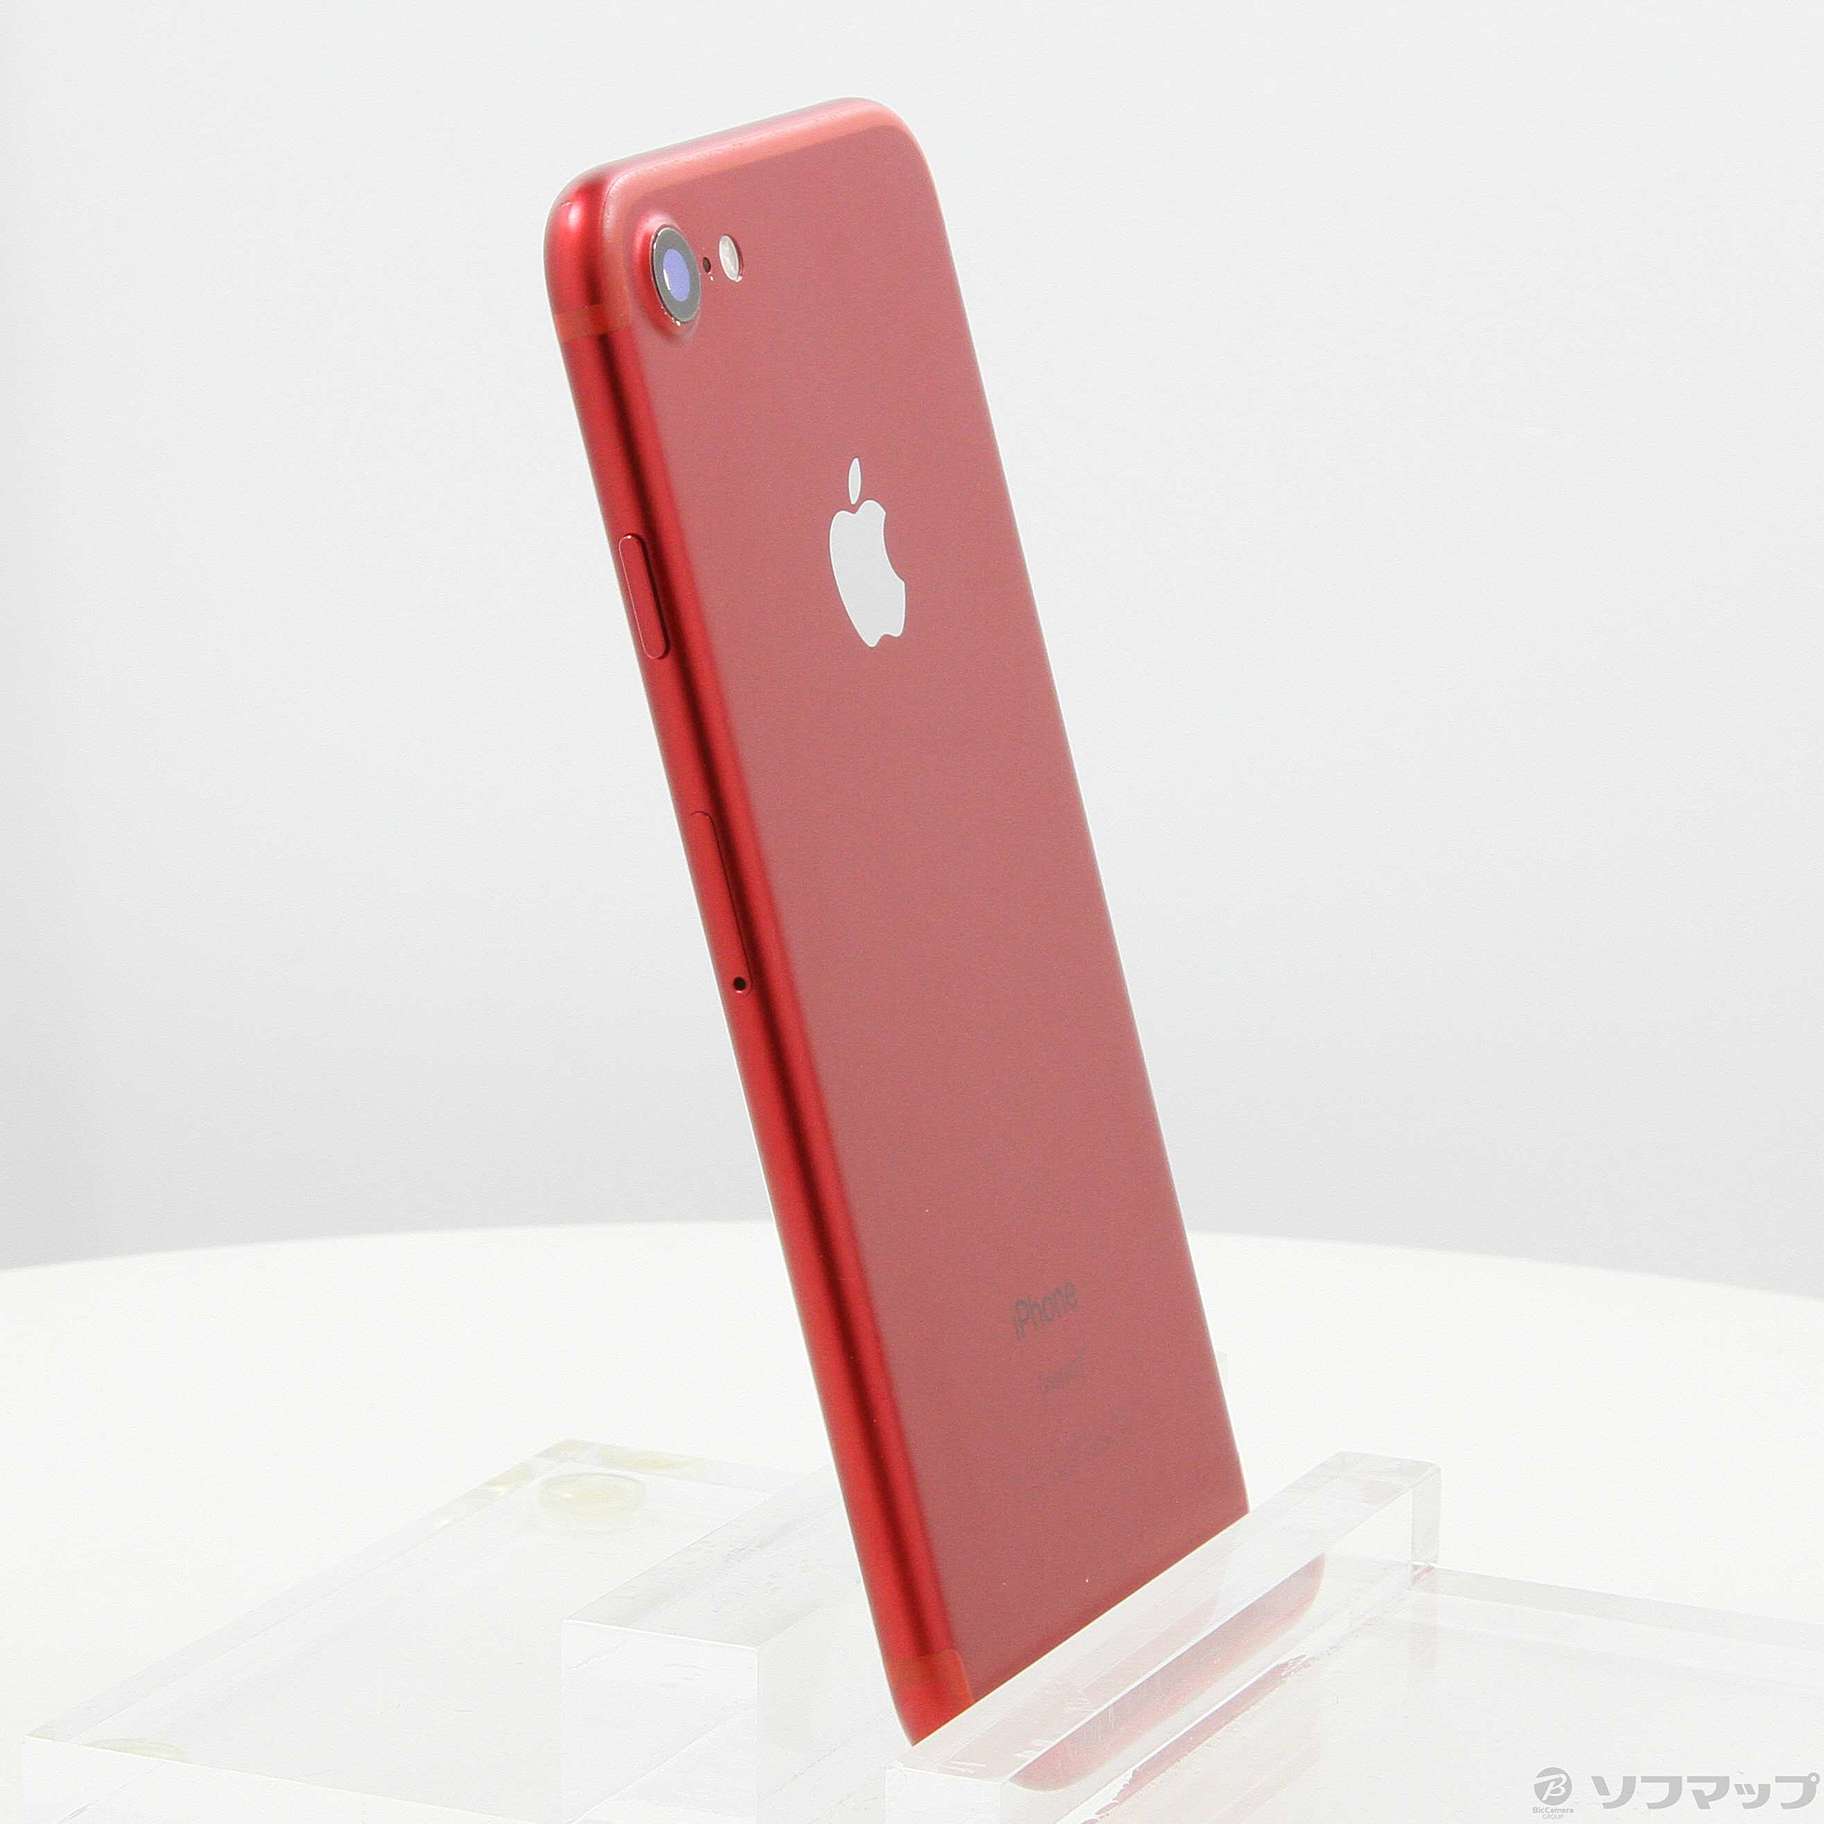 Apple iPhone 7 258GB プロダクトレッド MPRX2J/A - スマートフォン ...